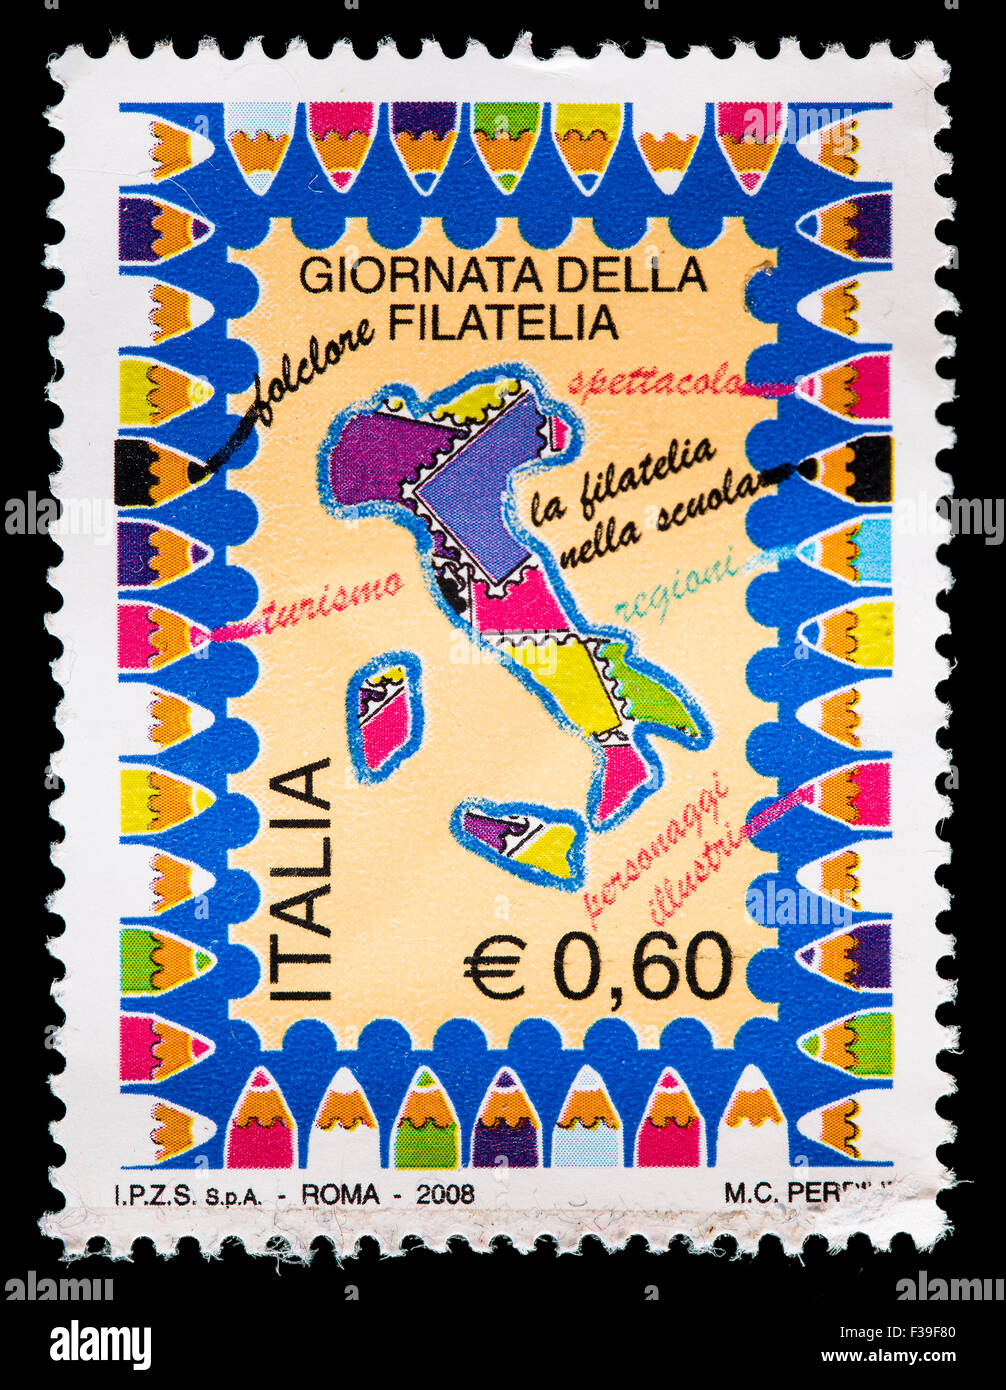 Italia - circa 2008: un francobollo stampato in Italia mostra la penisola italiana, rilasciati per la giornata della filatelia, circa 200 Foto Stock